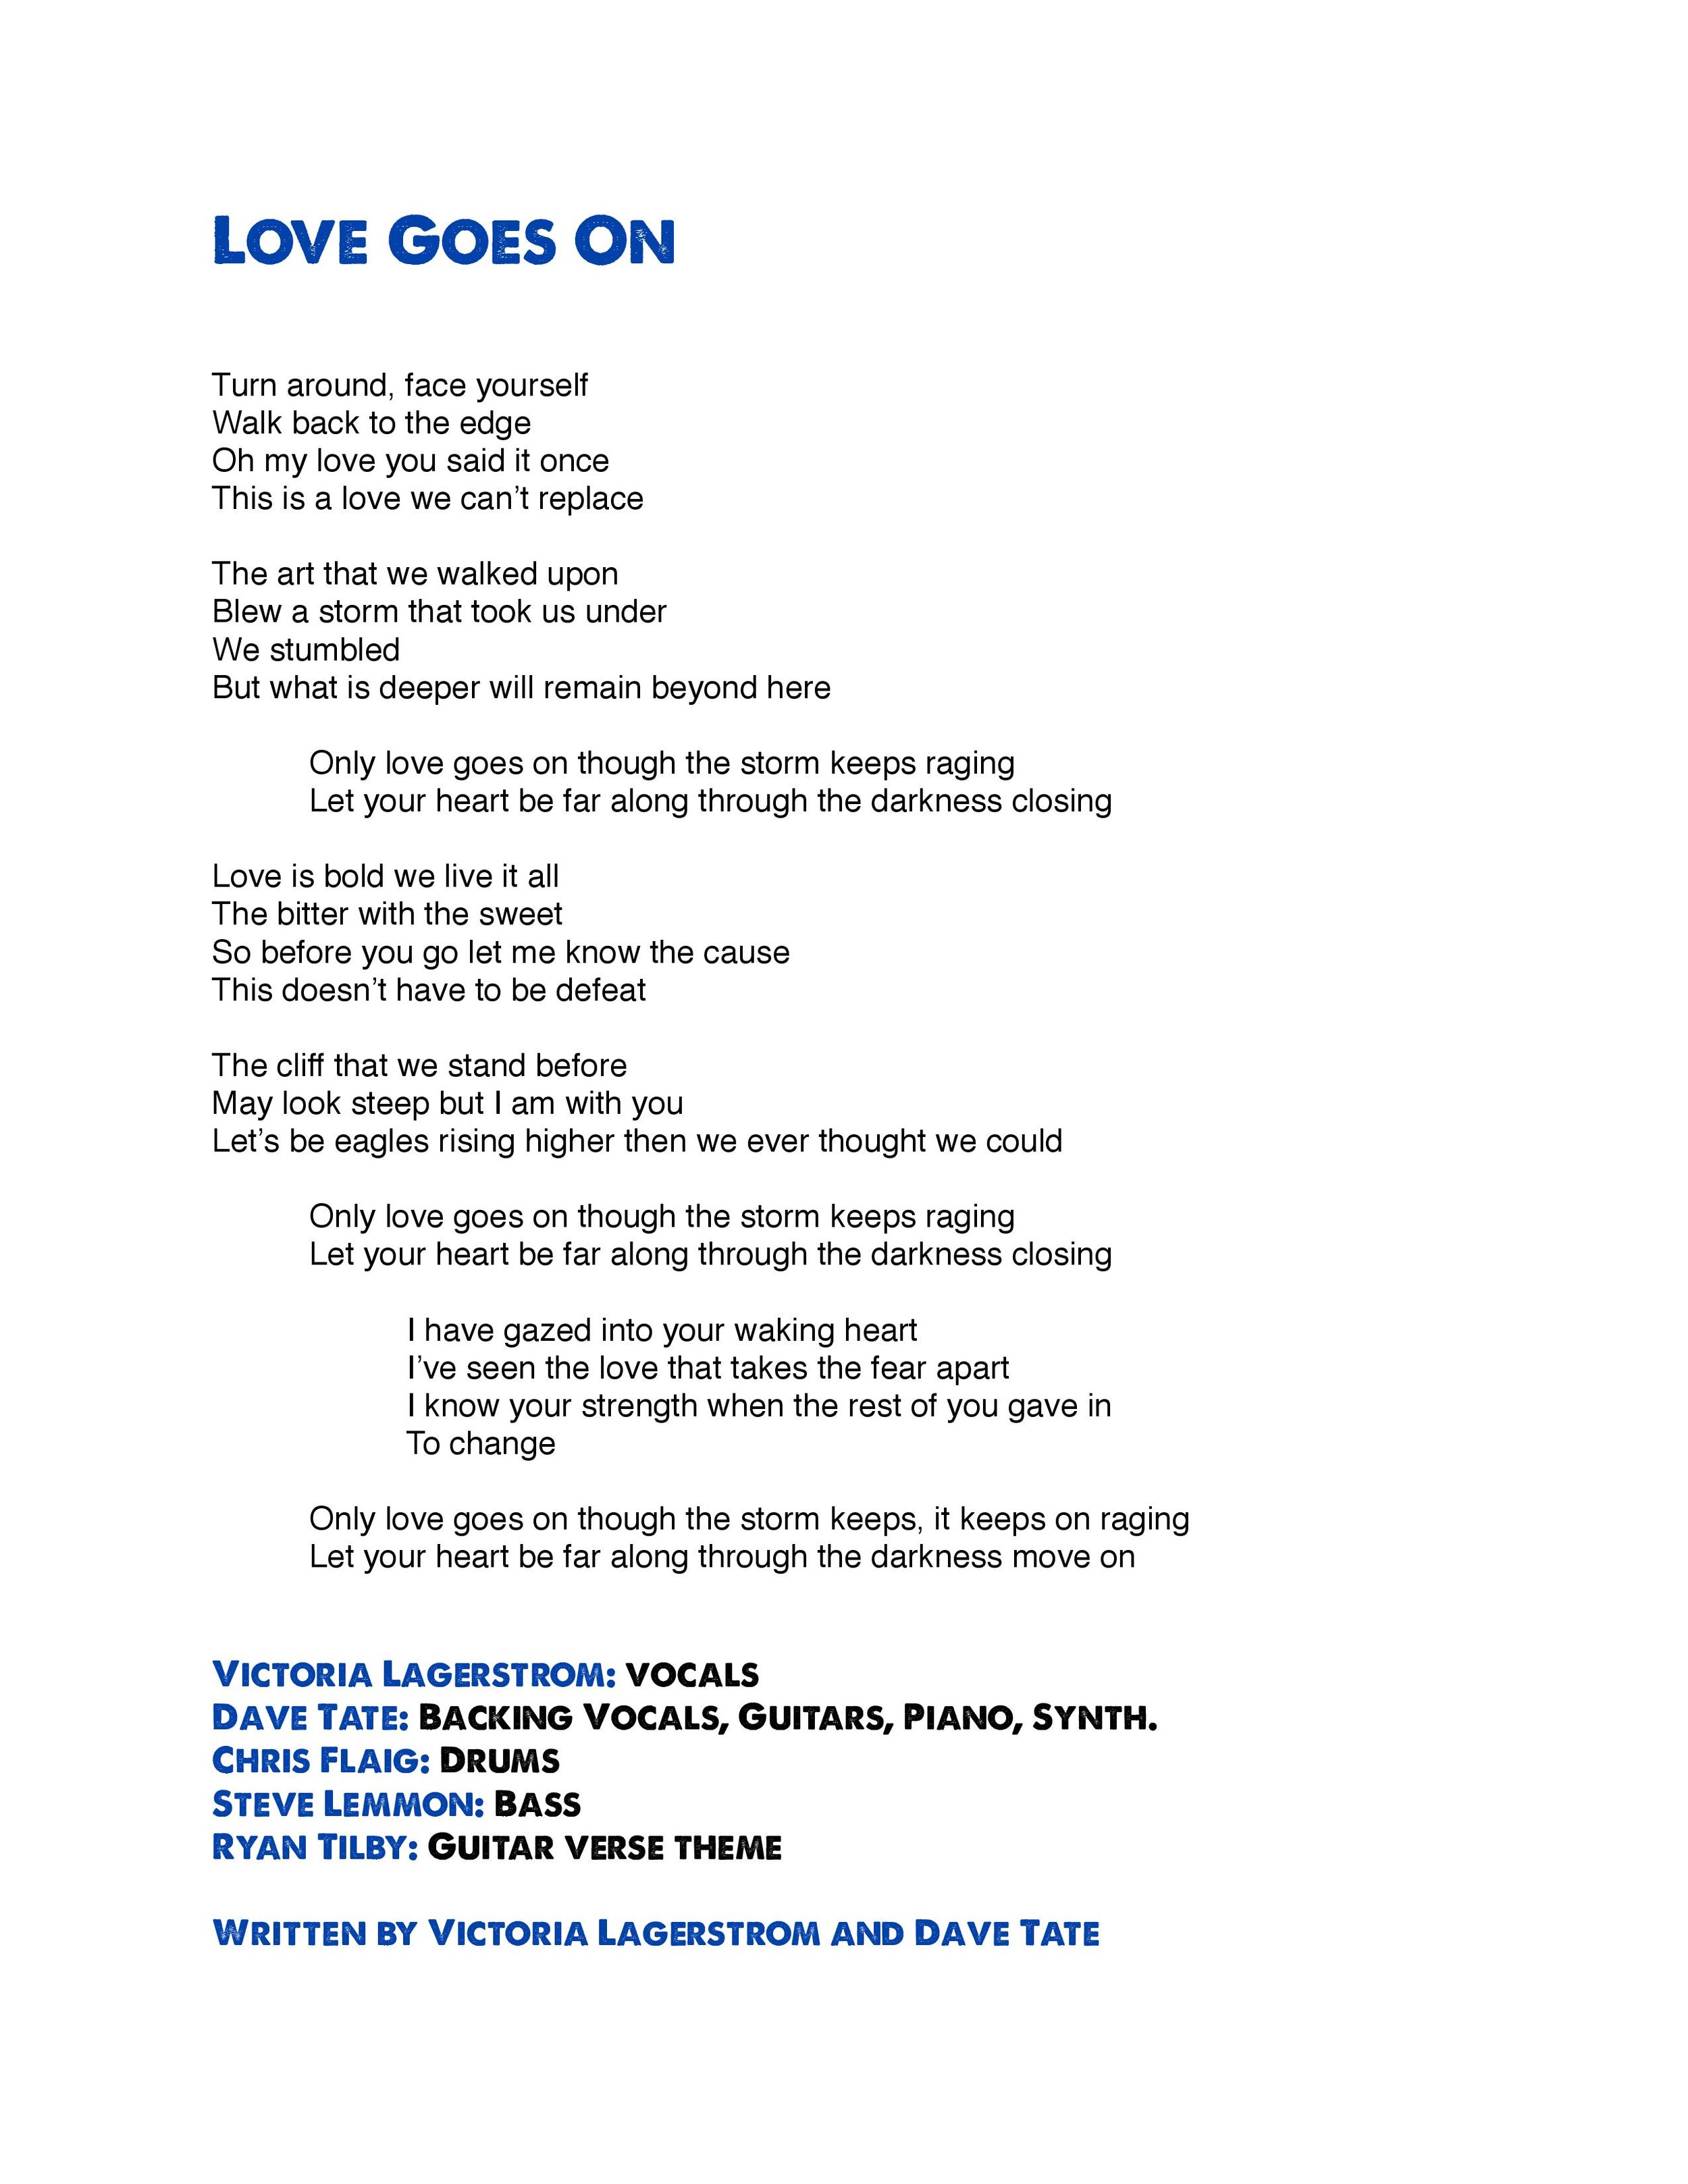 6 Love Goes On Lyrics-page-001.jpg